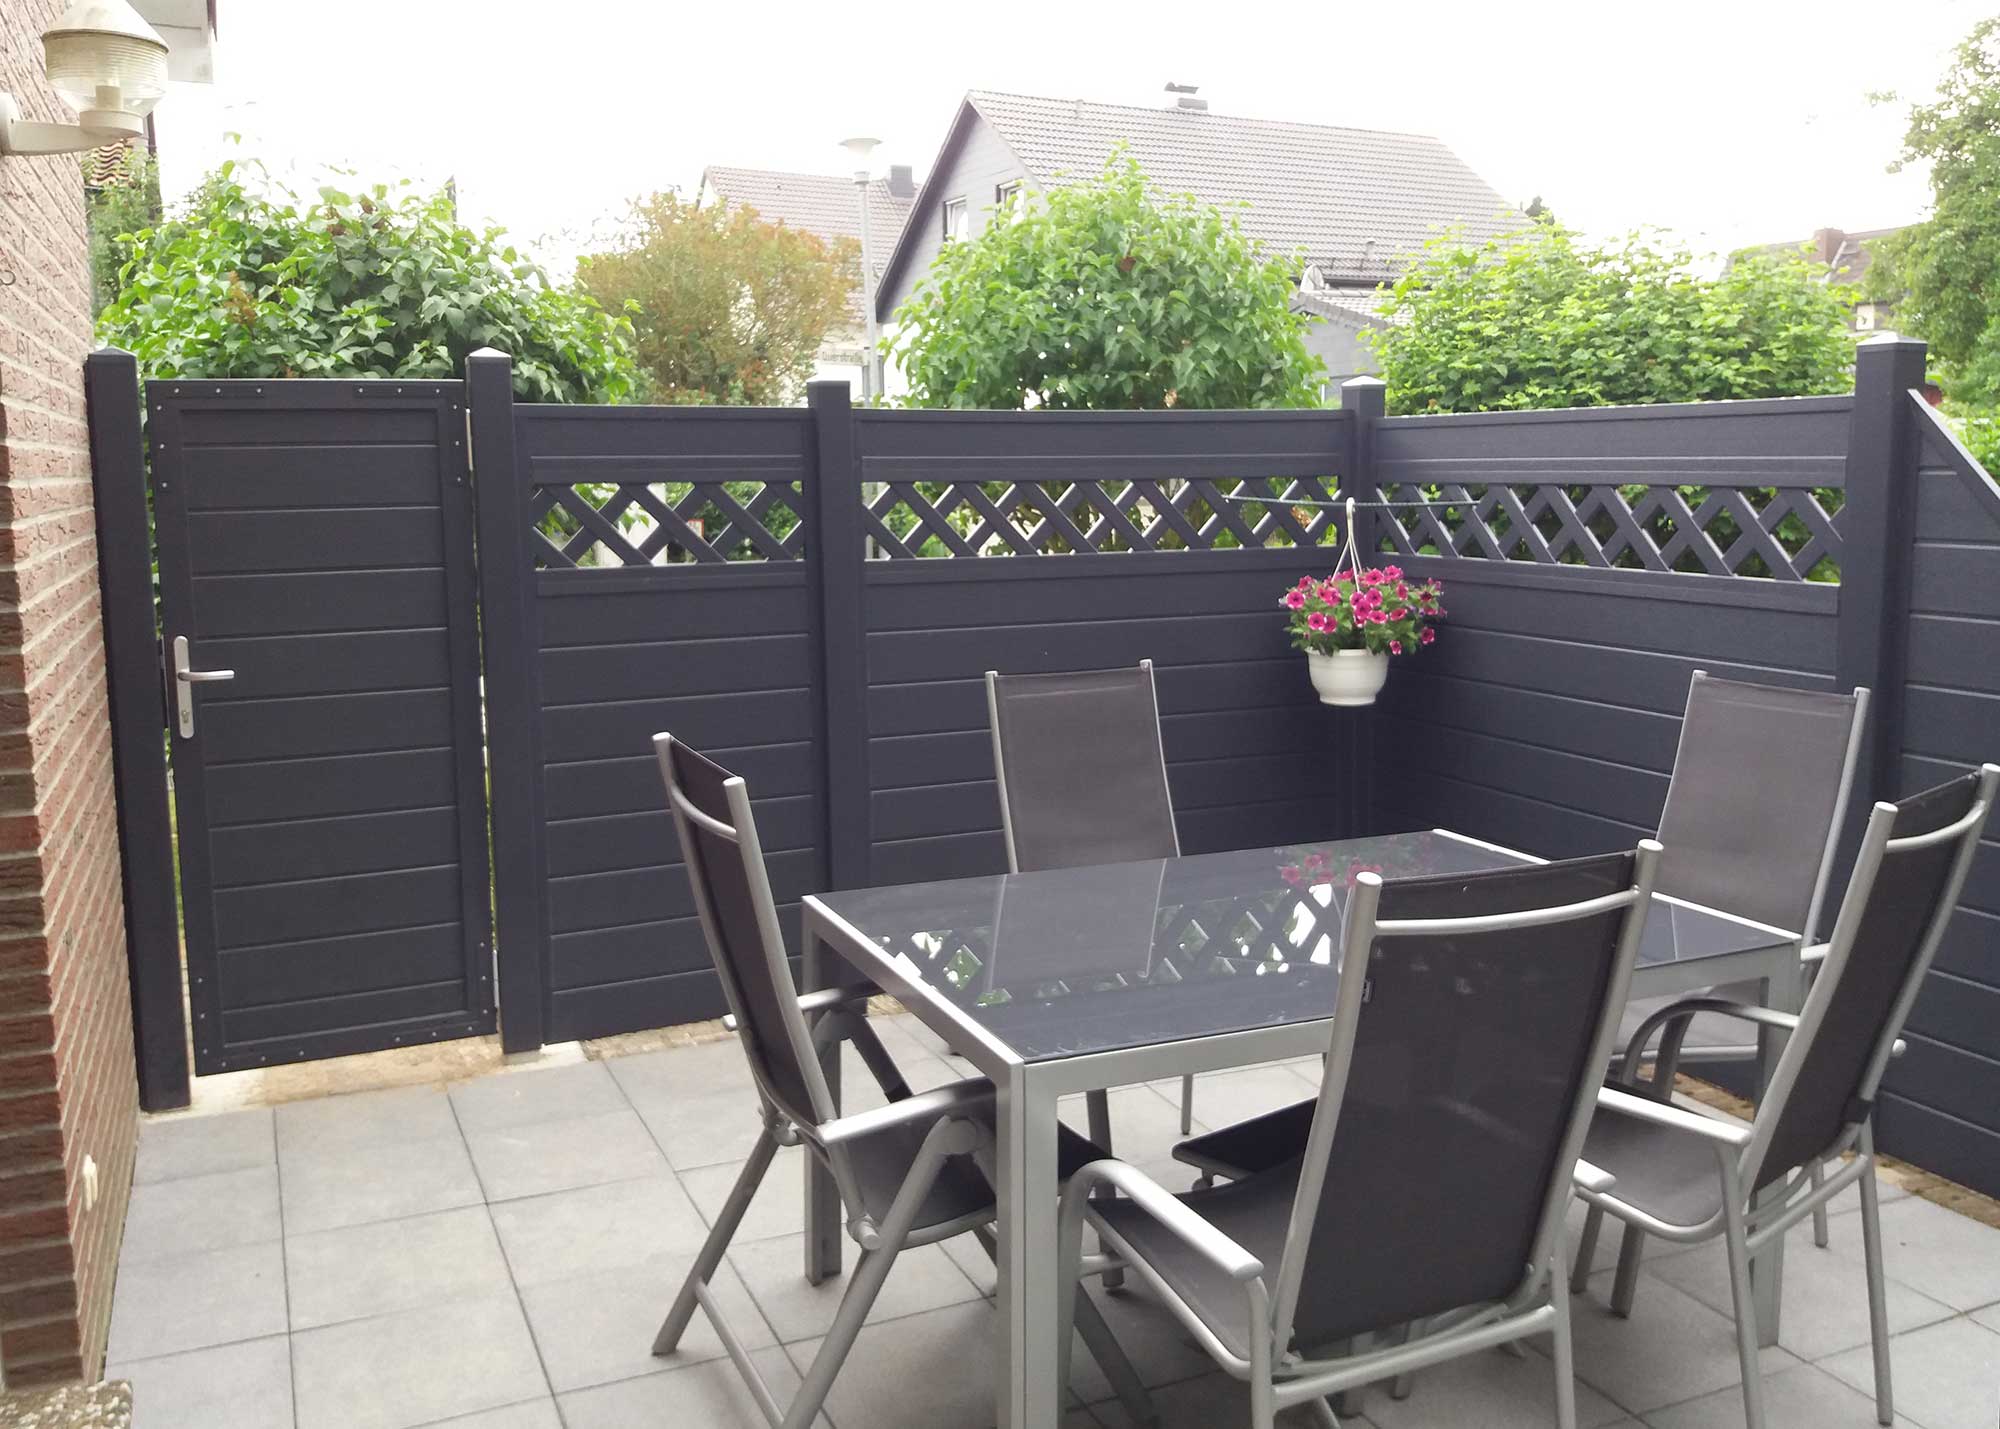 Sichtschutzwand in Anthrazit auf einer Terrasse im Garten mit passender Sichtschutztür